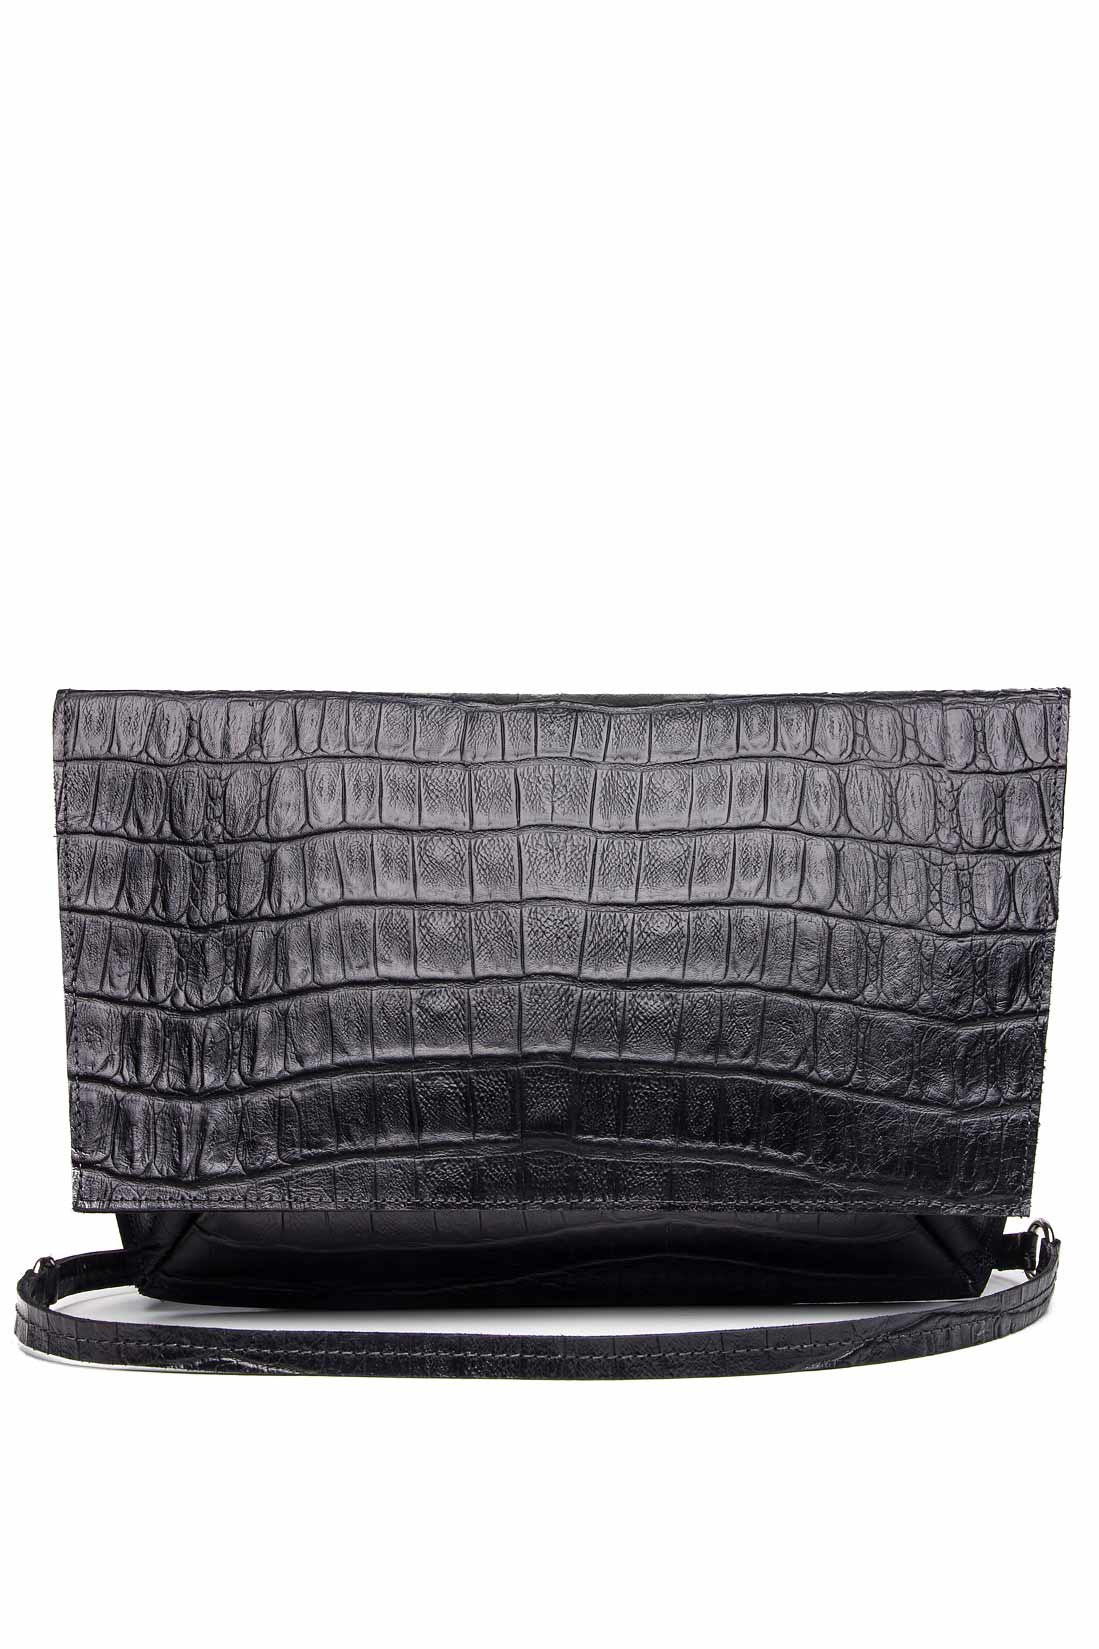 Croc-effect leather shoulder bag Laura Olaru image 0